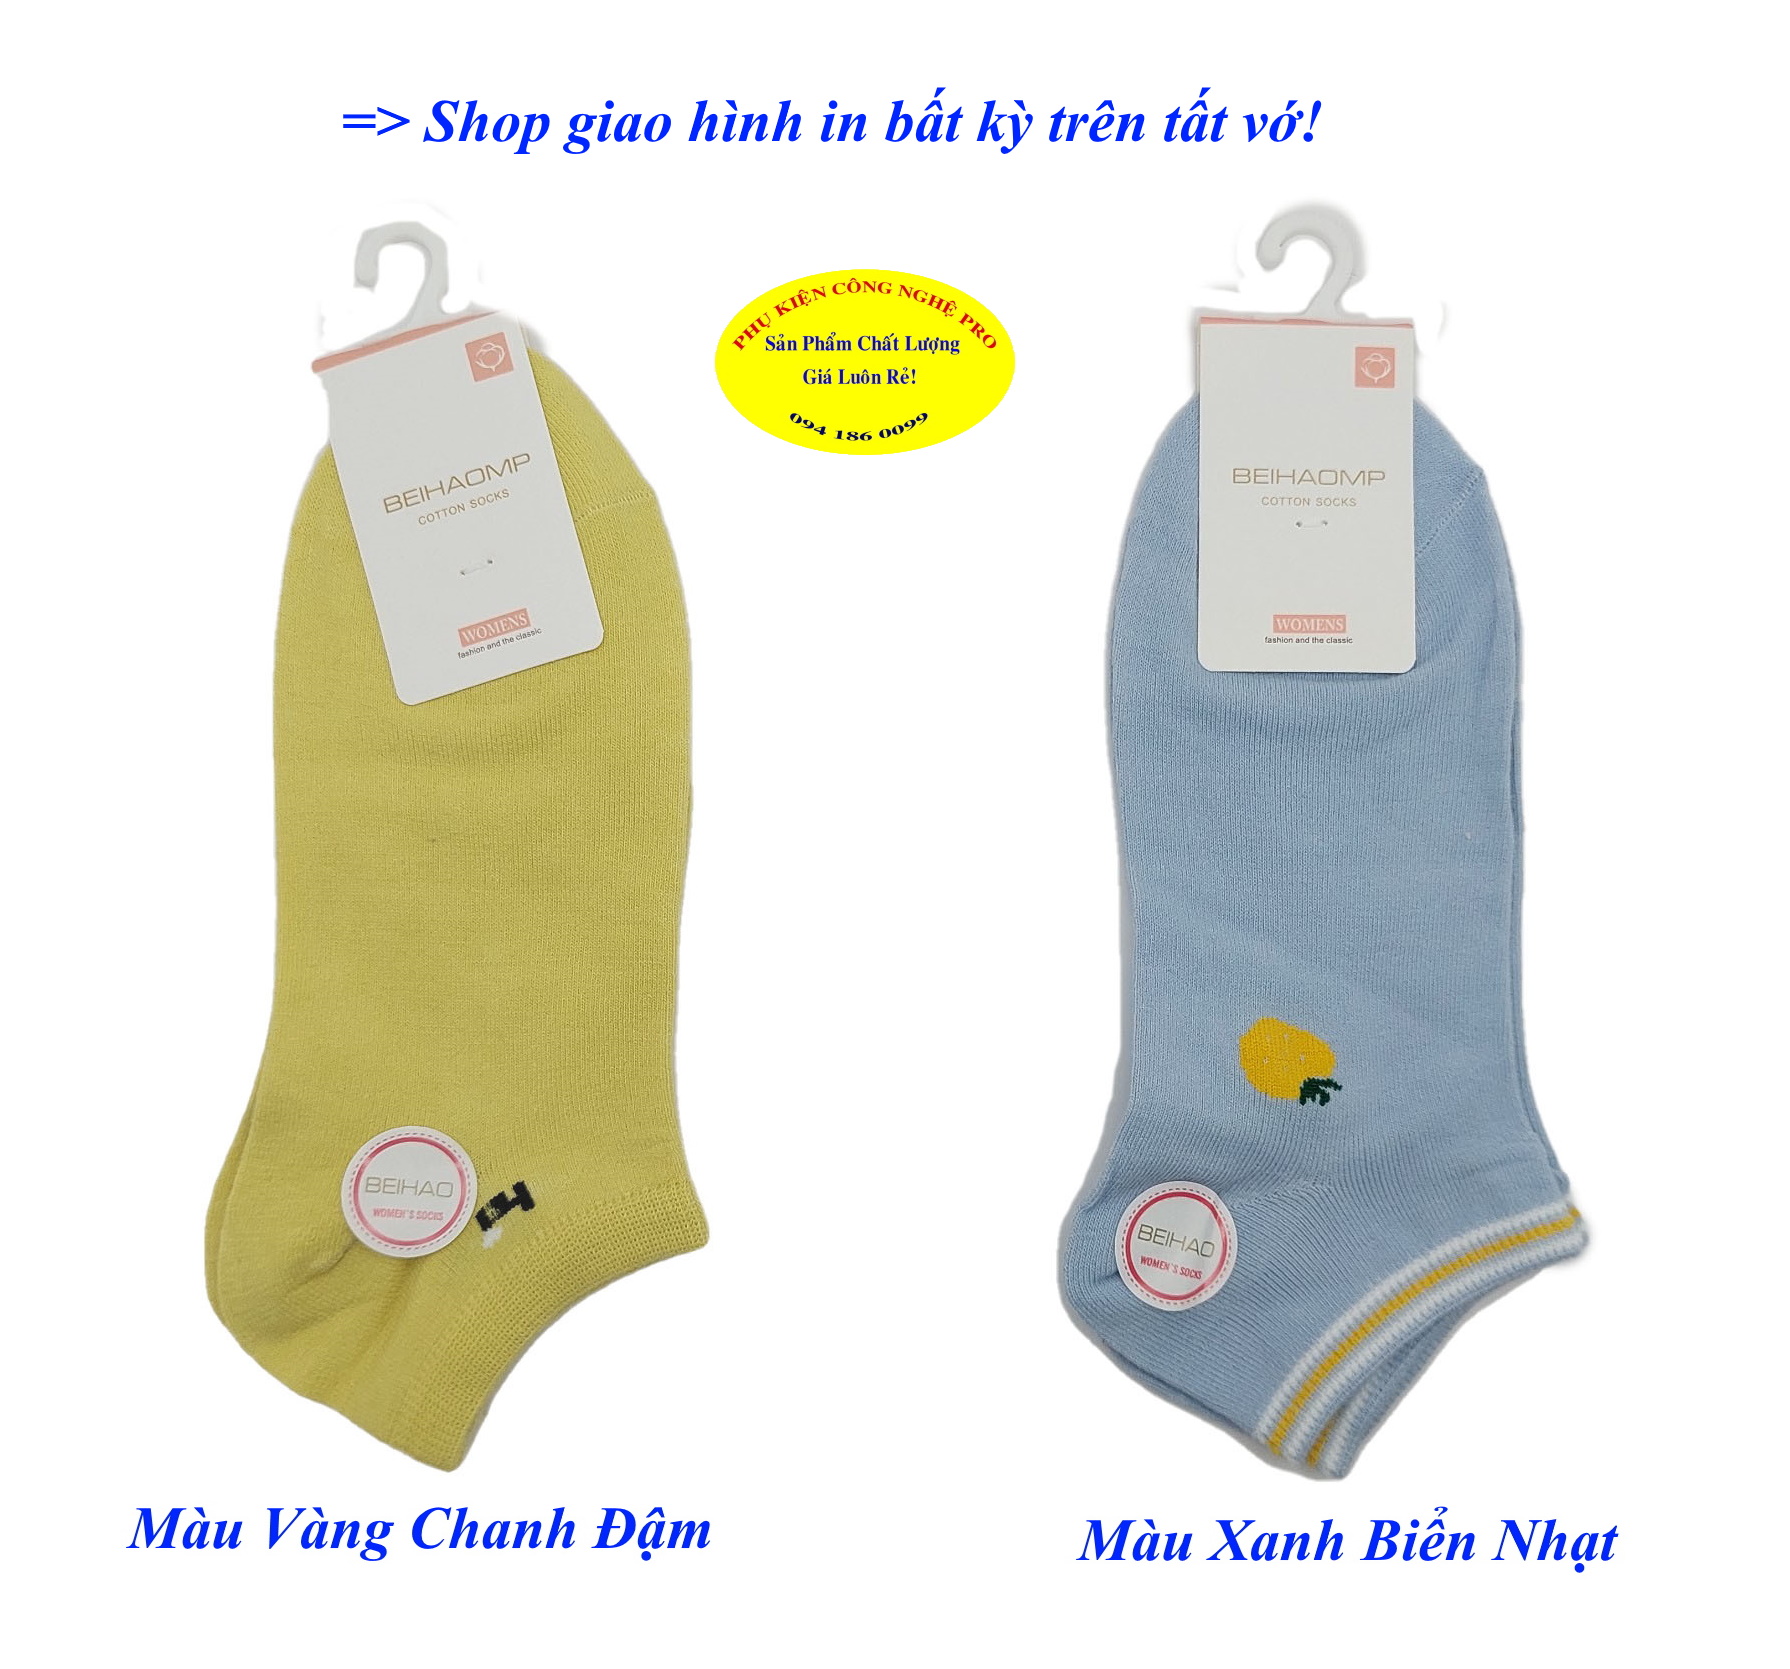 Tất Vớ nữ Kiểu cổ ngắn Beihaomp Cotton Socks Womens In hình bất kỳ Chất liệu cotton co giãn, Mềm mại, Bảo vệ đôi chân